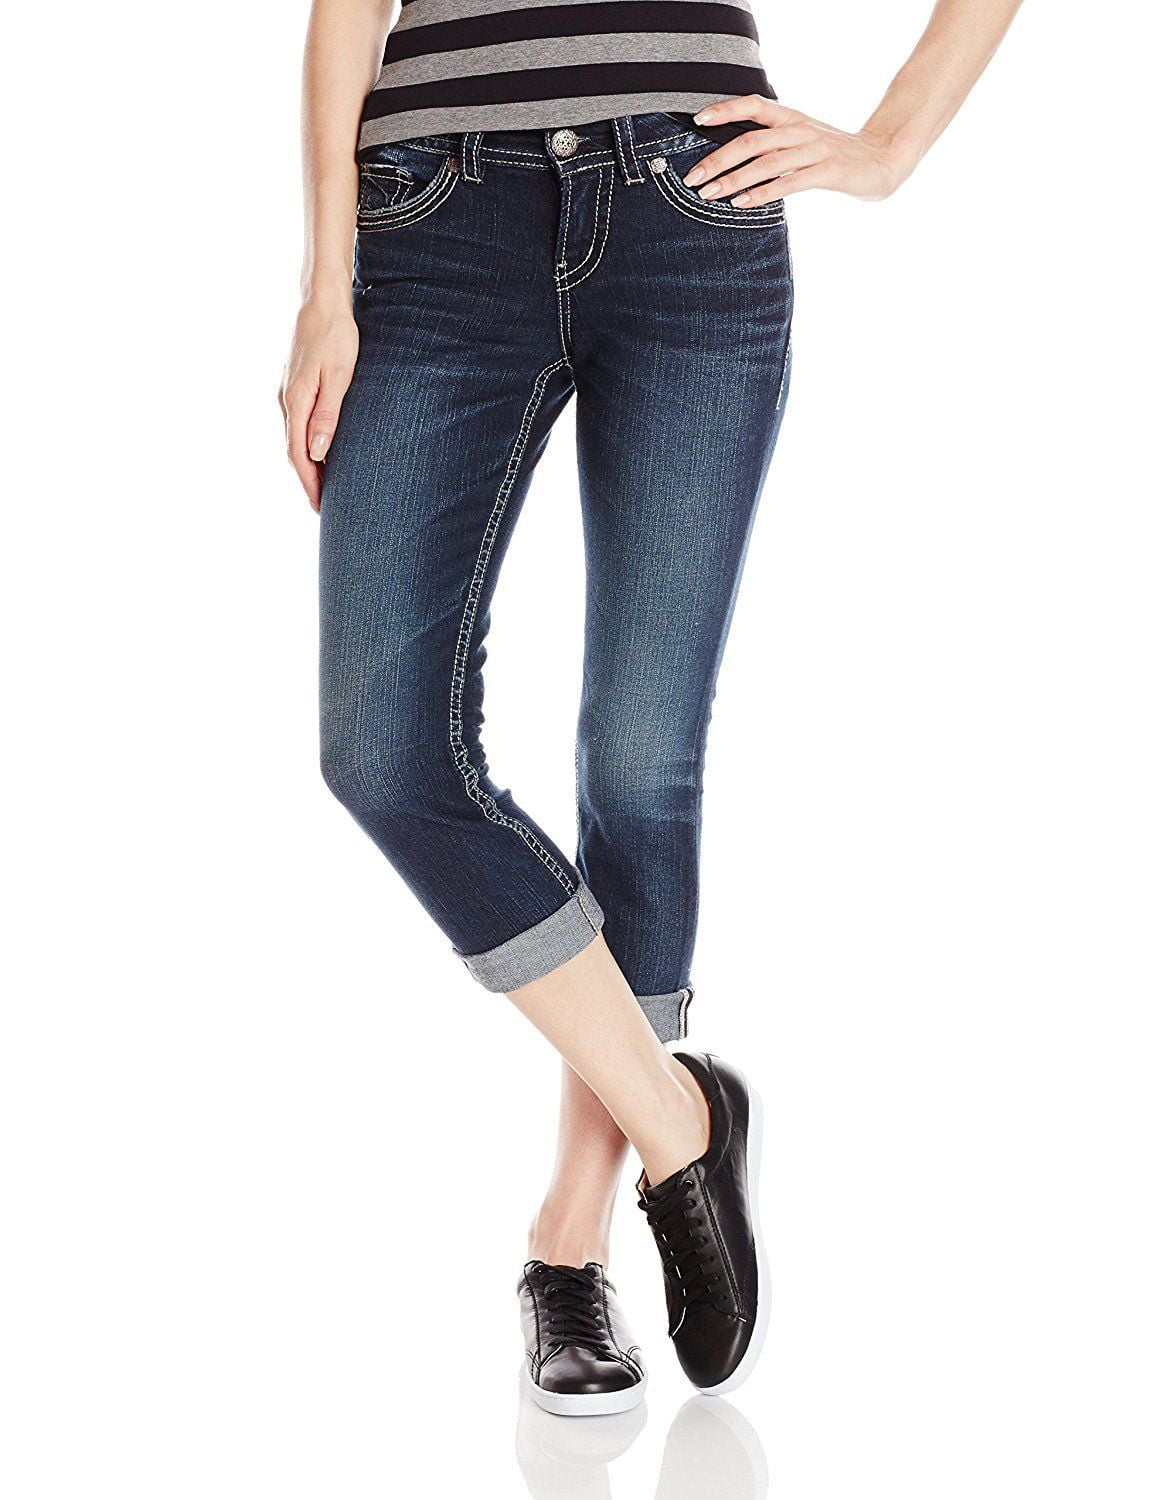 New 6010-1 Silver Jeans Dark Indigo Suki Fit Mid Rise Fluid Capri Jeans 24W  22.5L